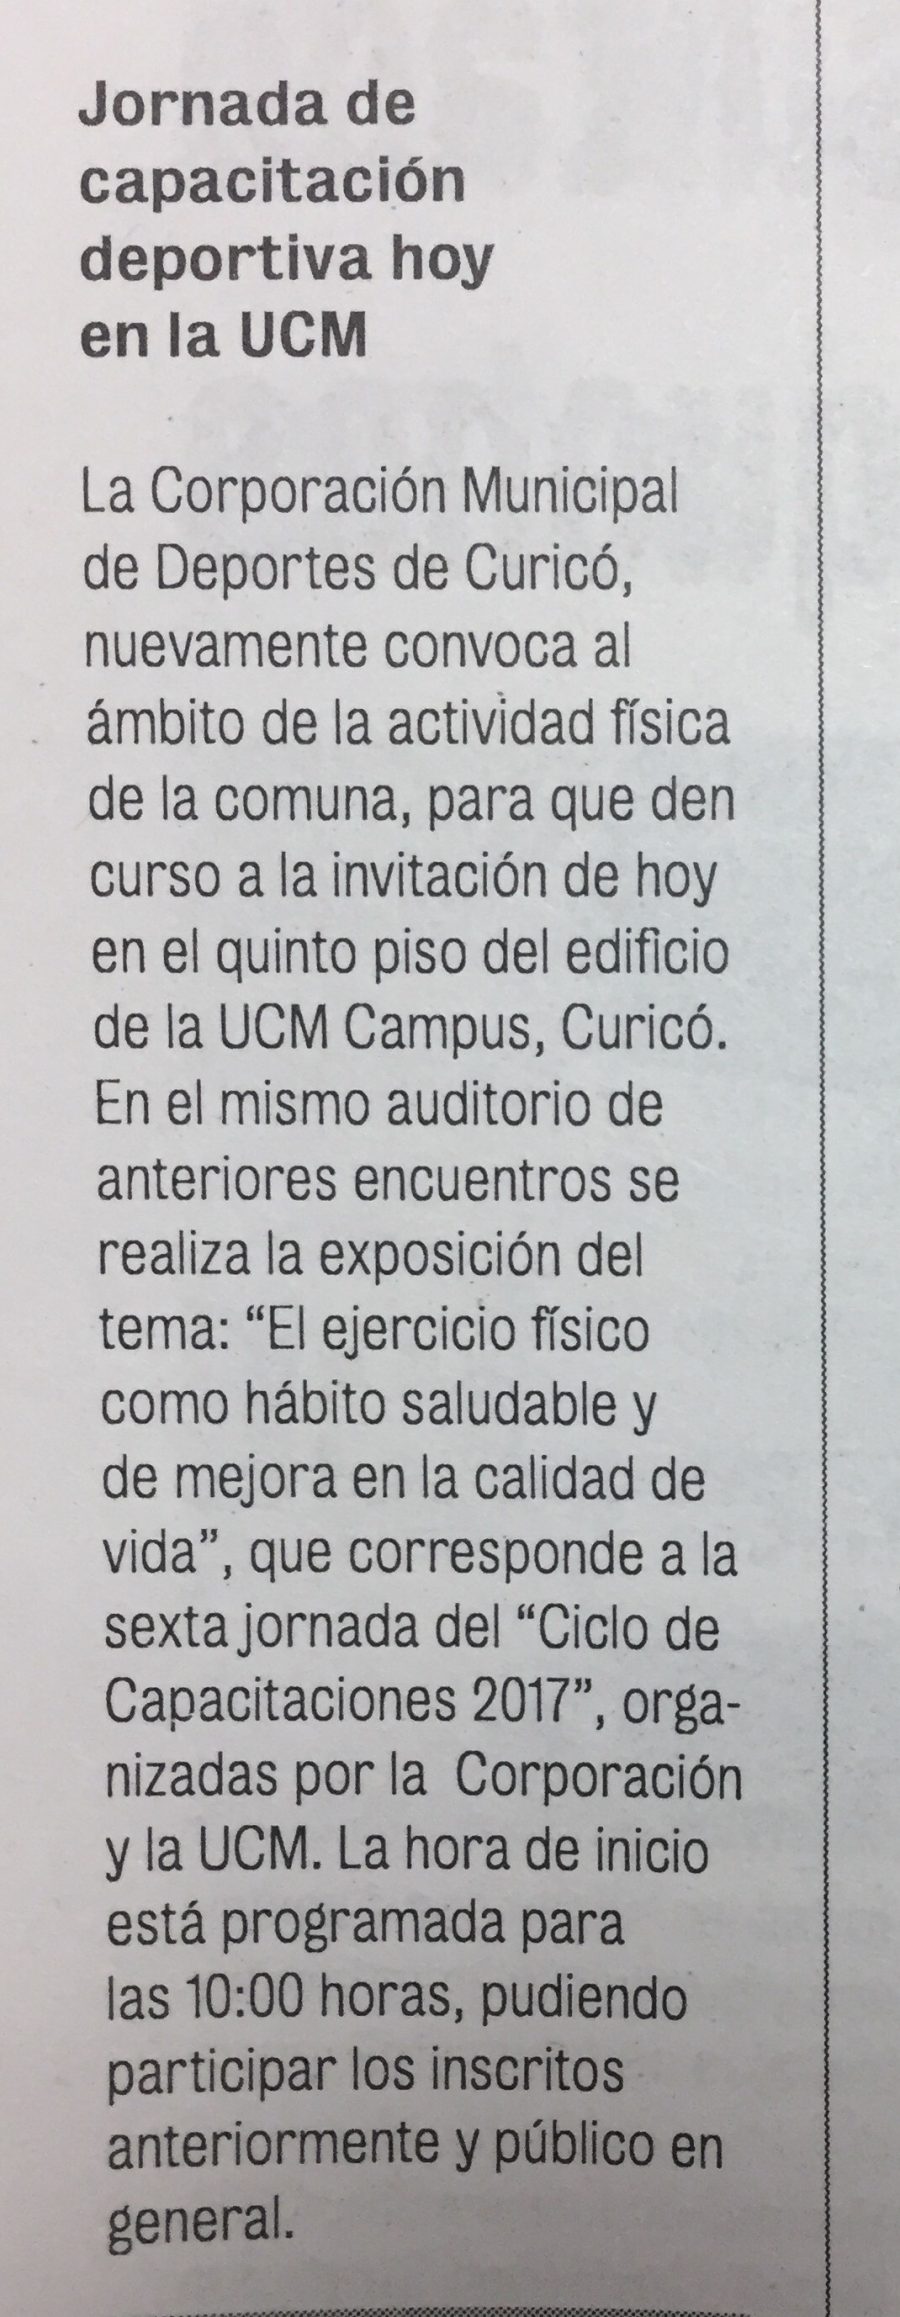 21 de octubre en Diario La Prensa: “Jornada de capacitación deportiva hoy en la UCM”